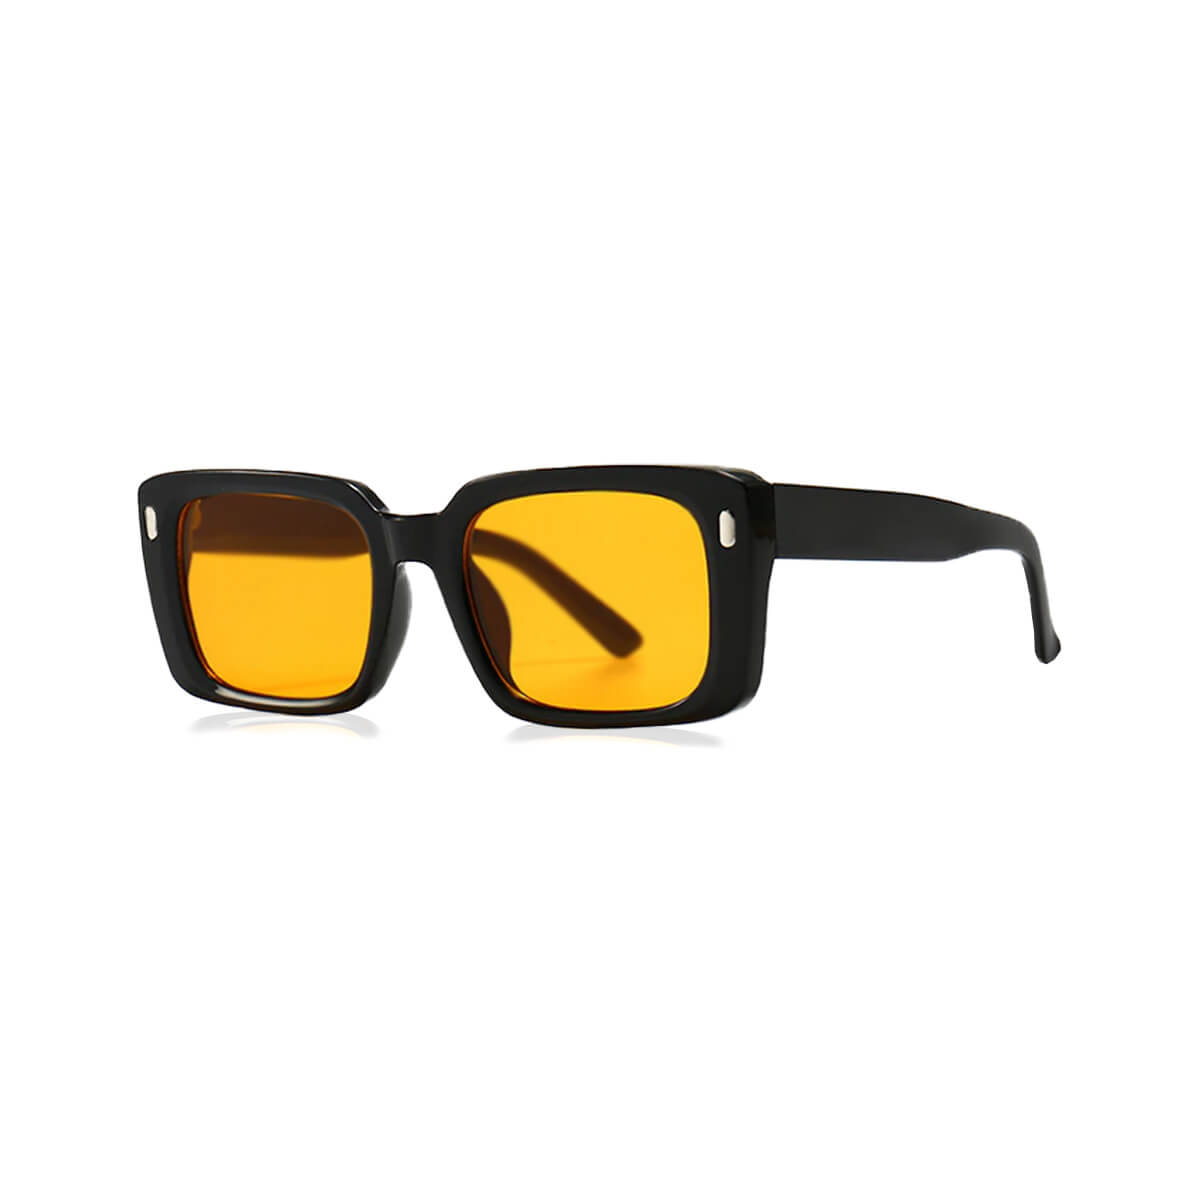 Black Frame Sunglasses With Orange Lens Side Left